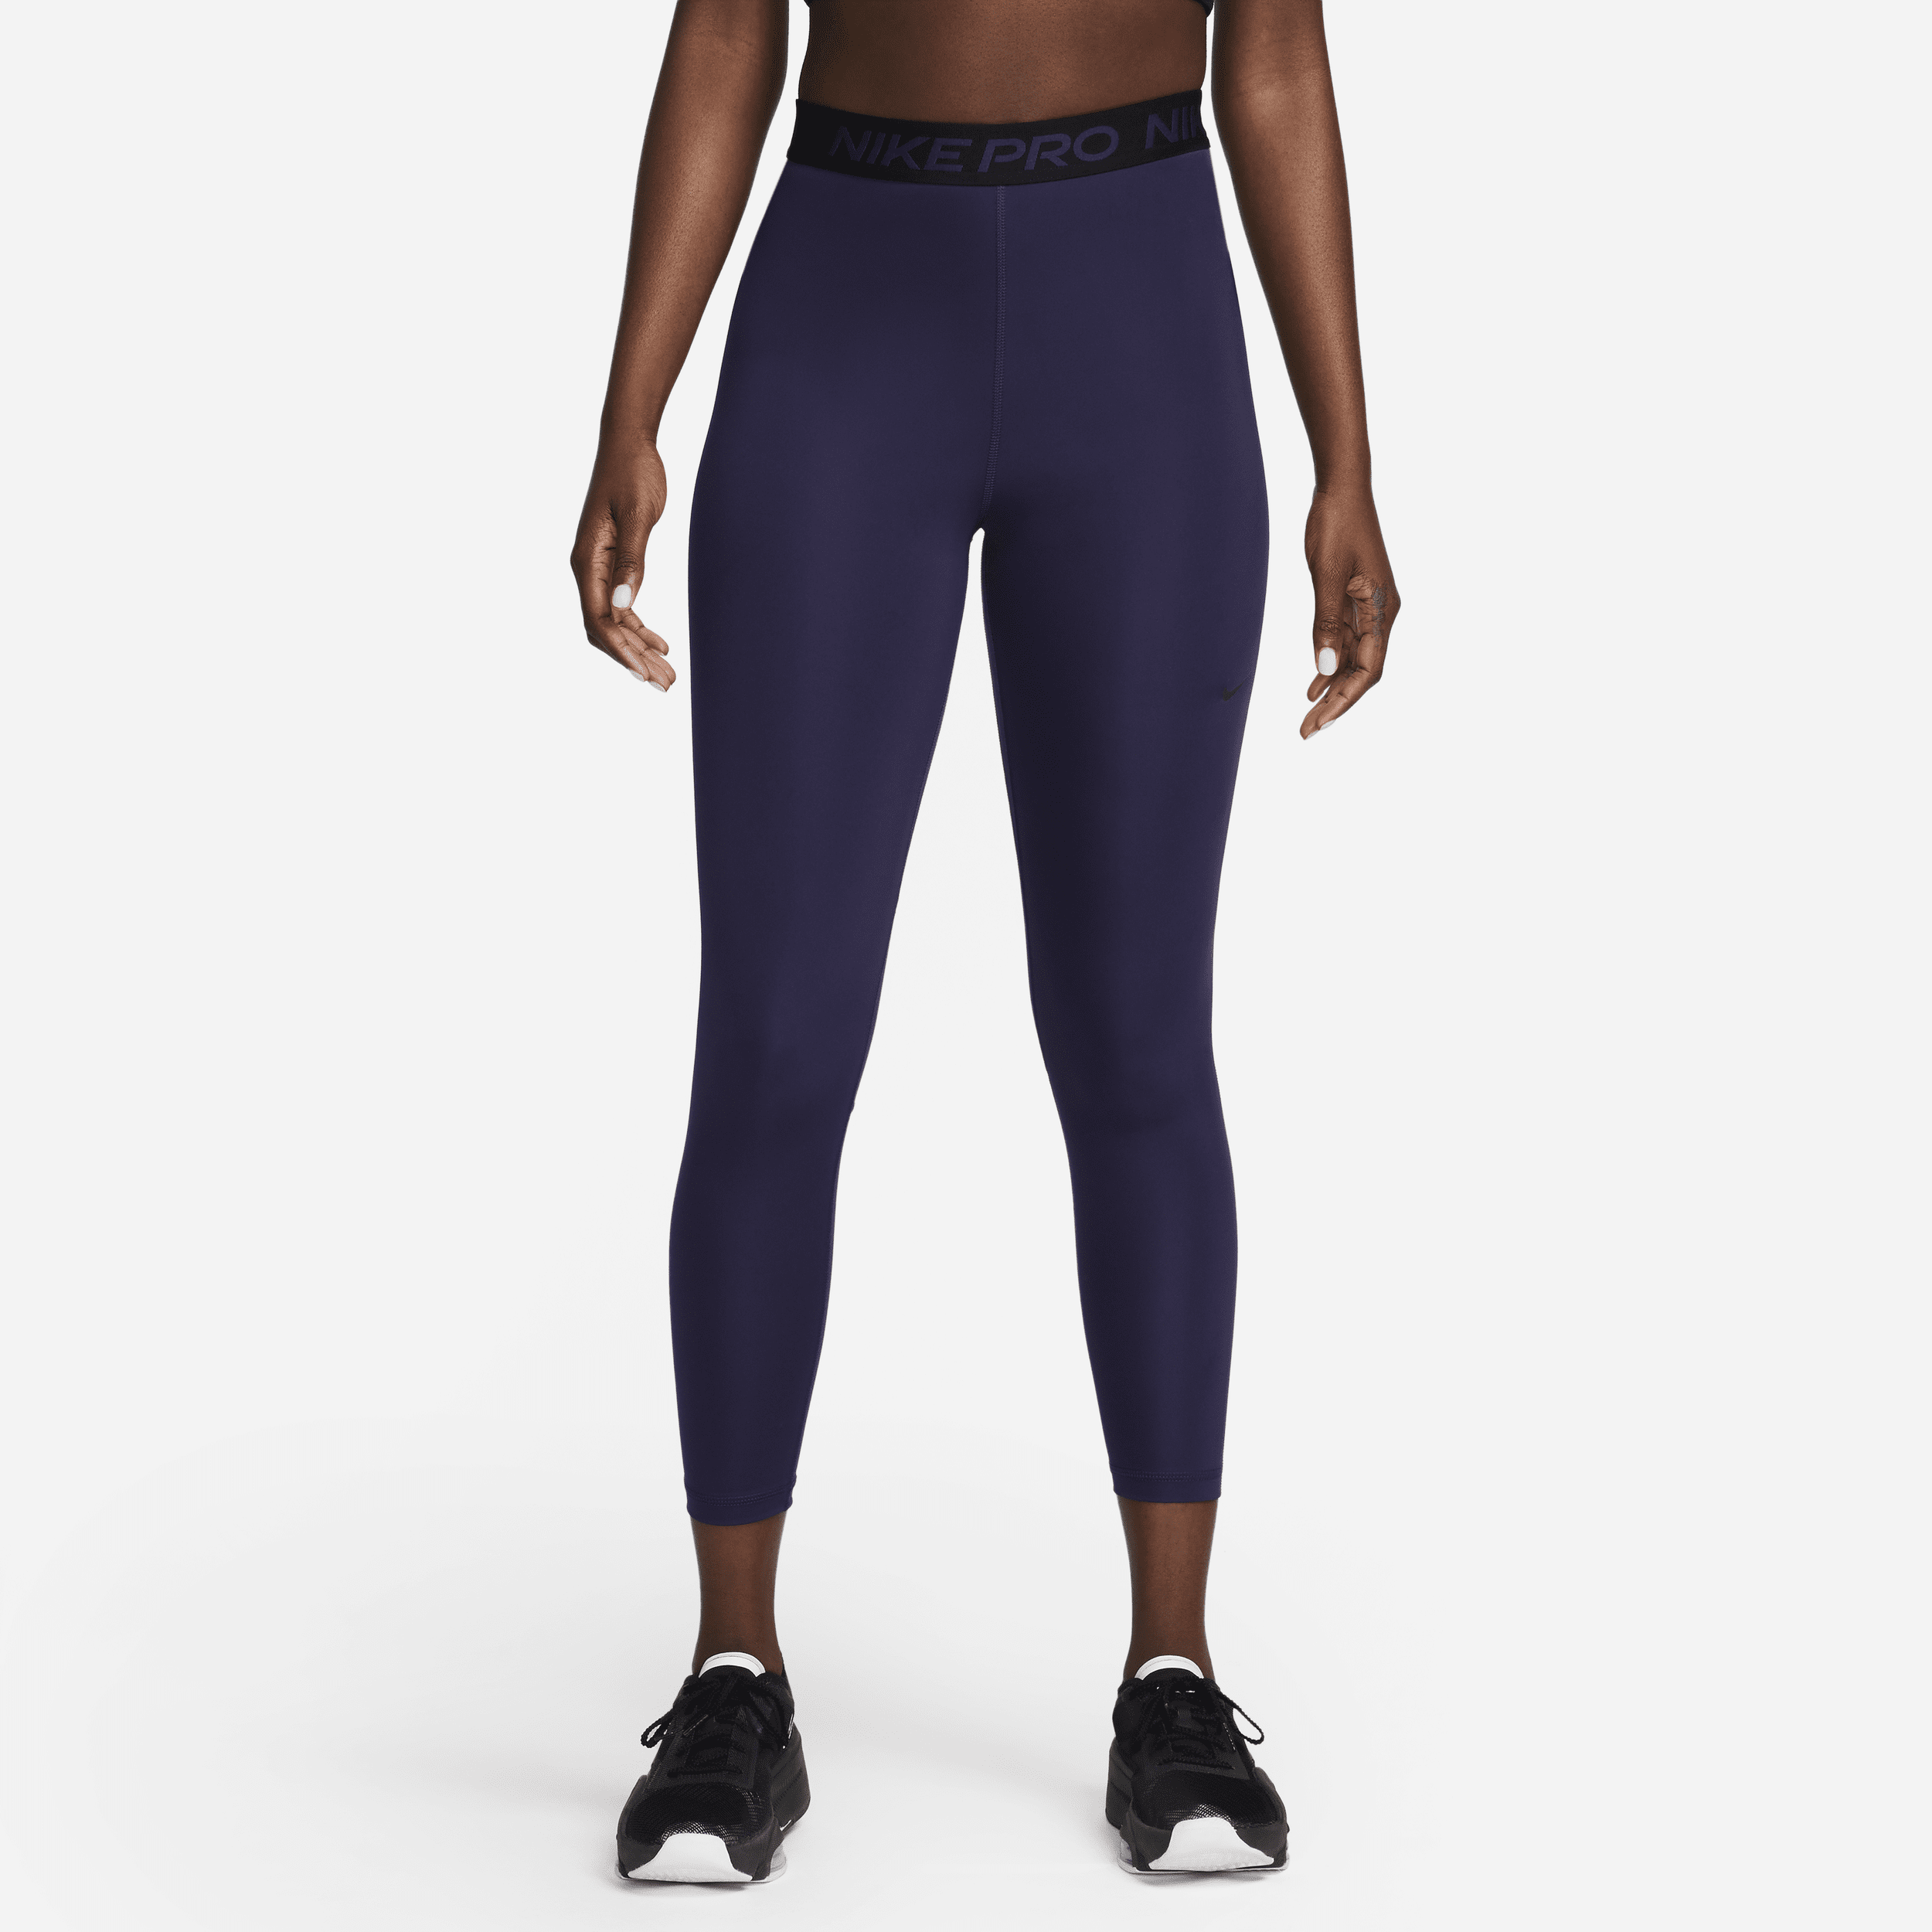 Nike Pro 365 Women's High-Waisted 7/8 Mesh Panel Leggings